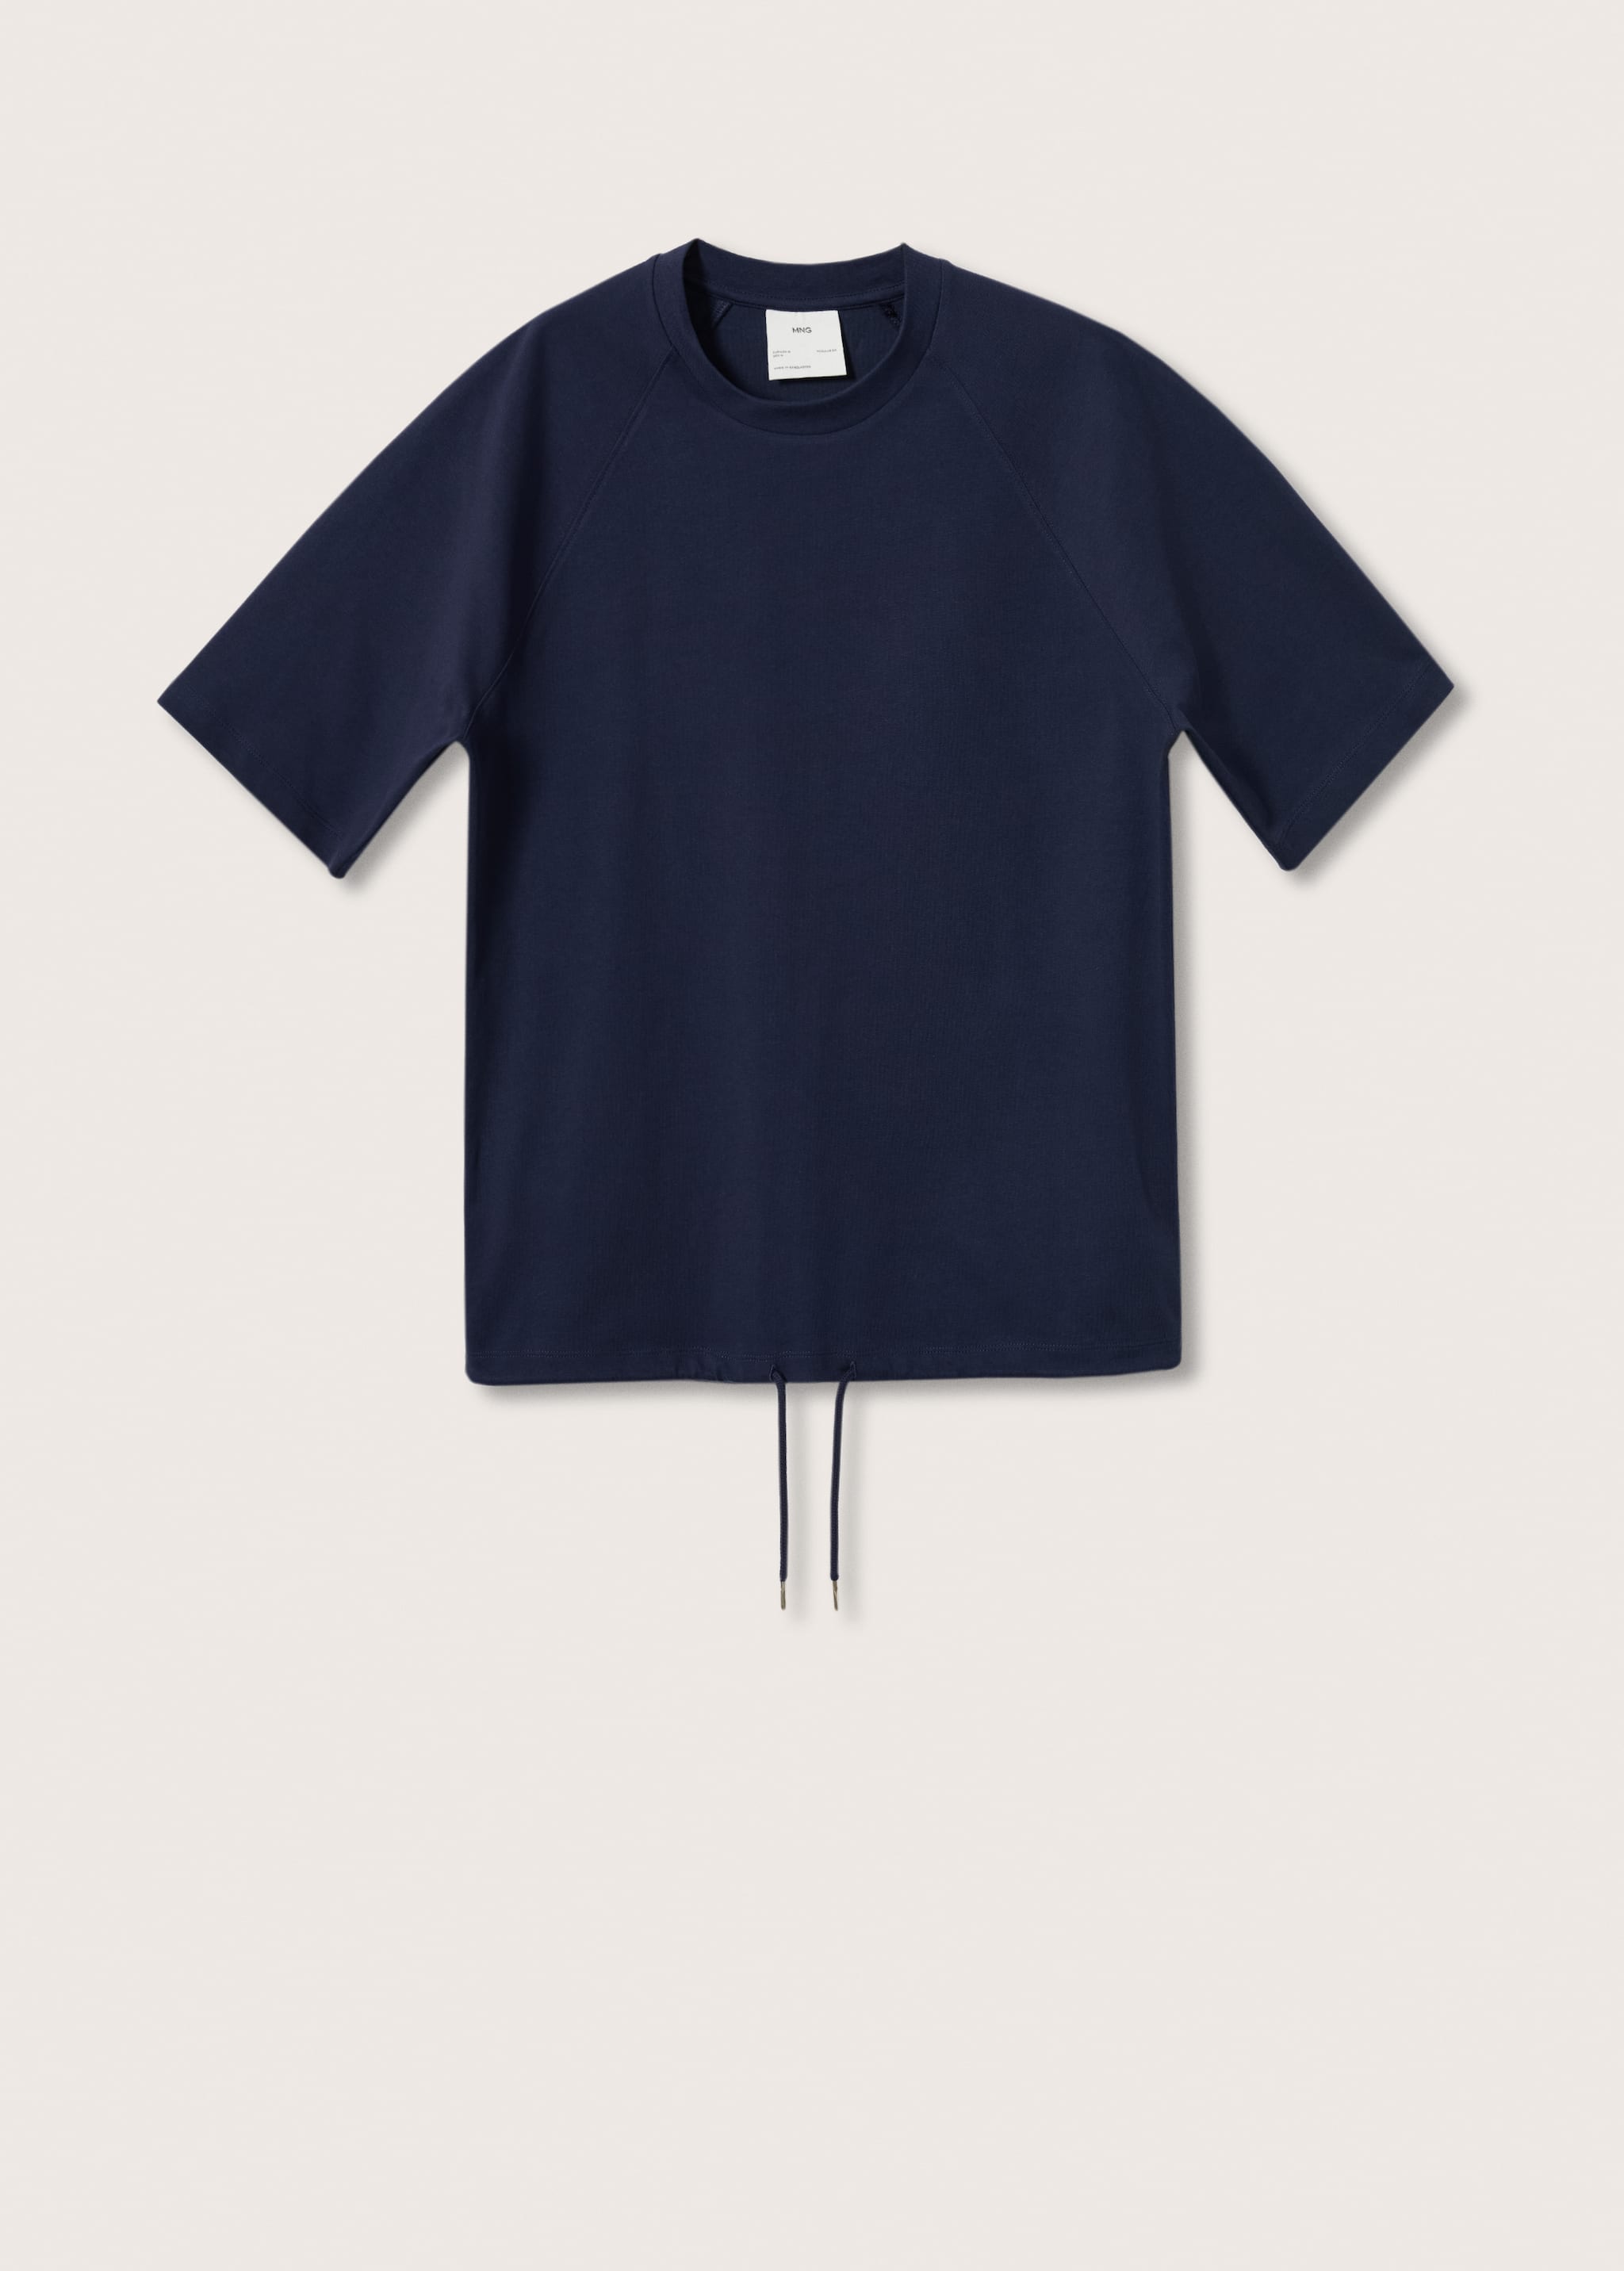 Camiseta algodon cordón - Artículo sin modelo